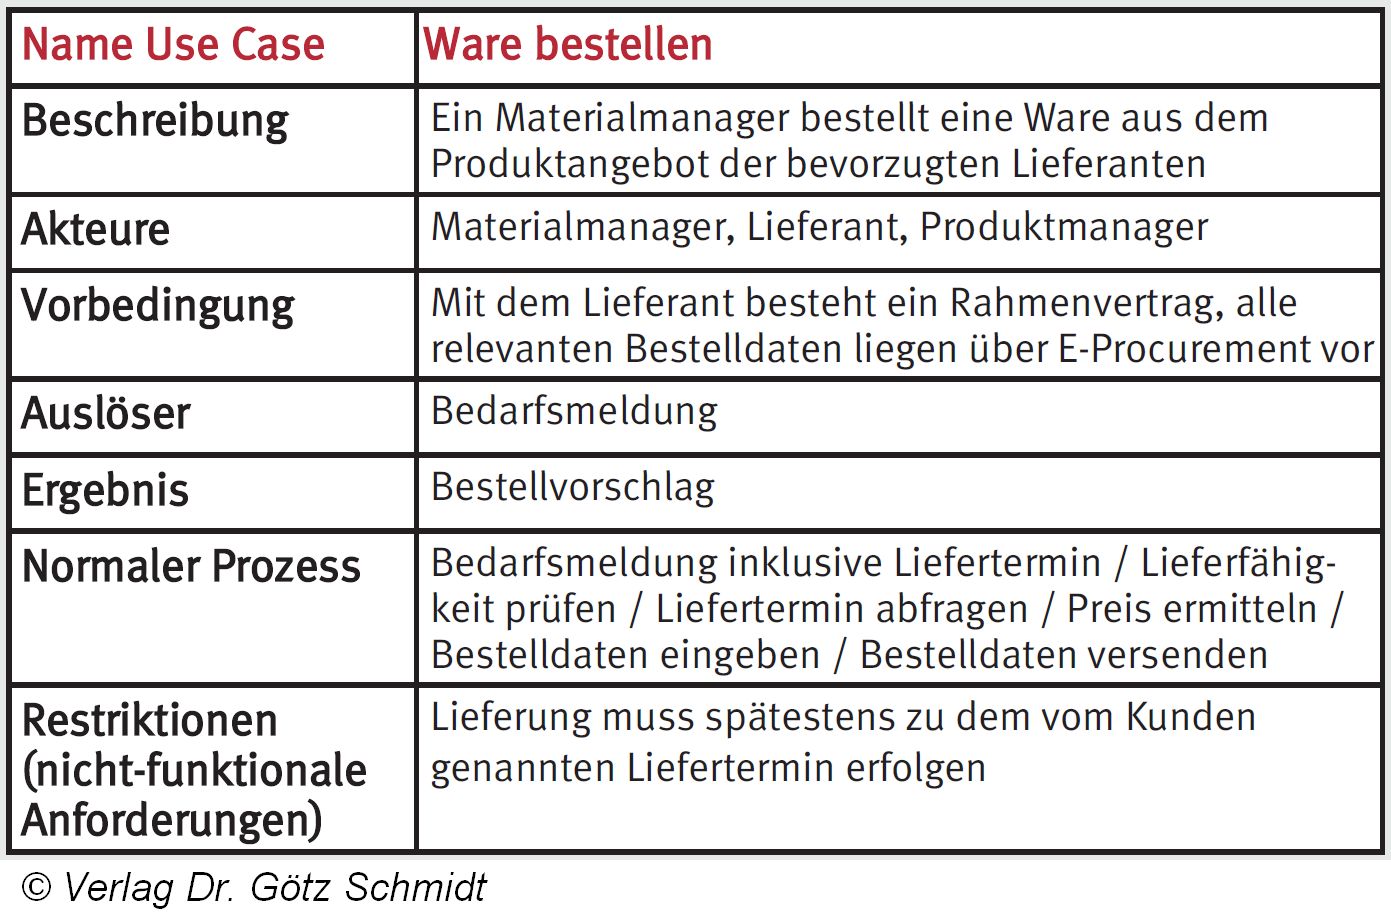 Abb. 2.129 Use Case Ware bestellen